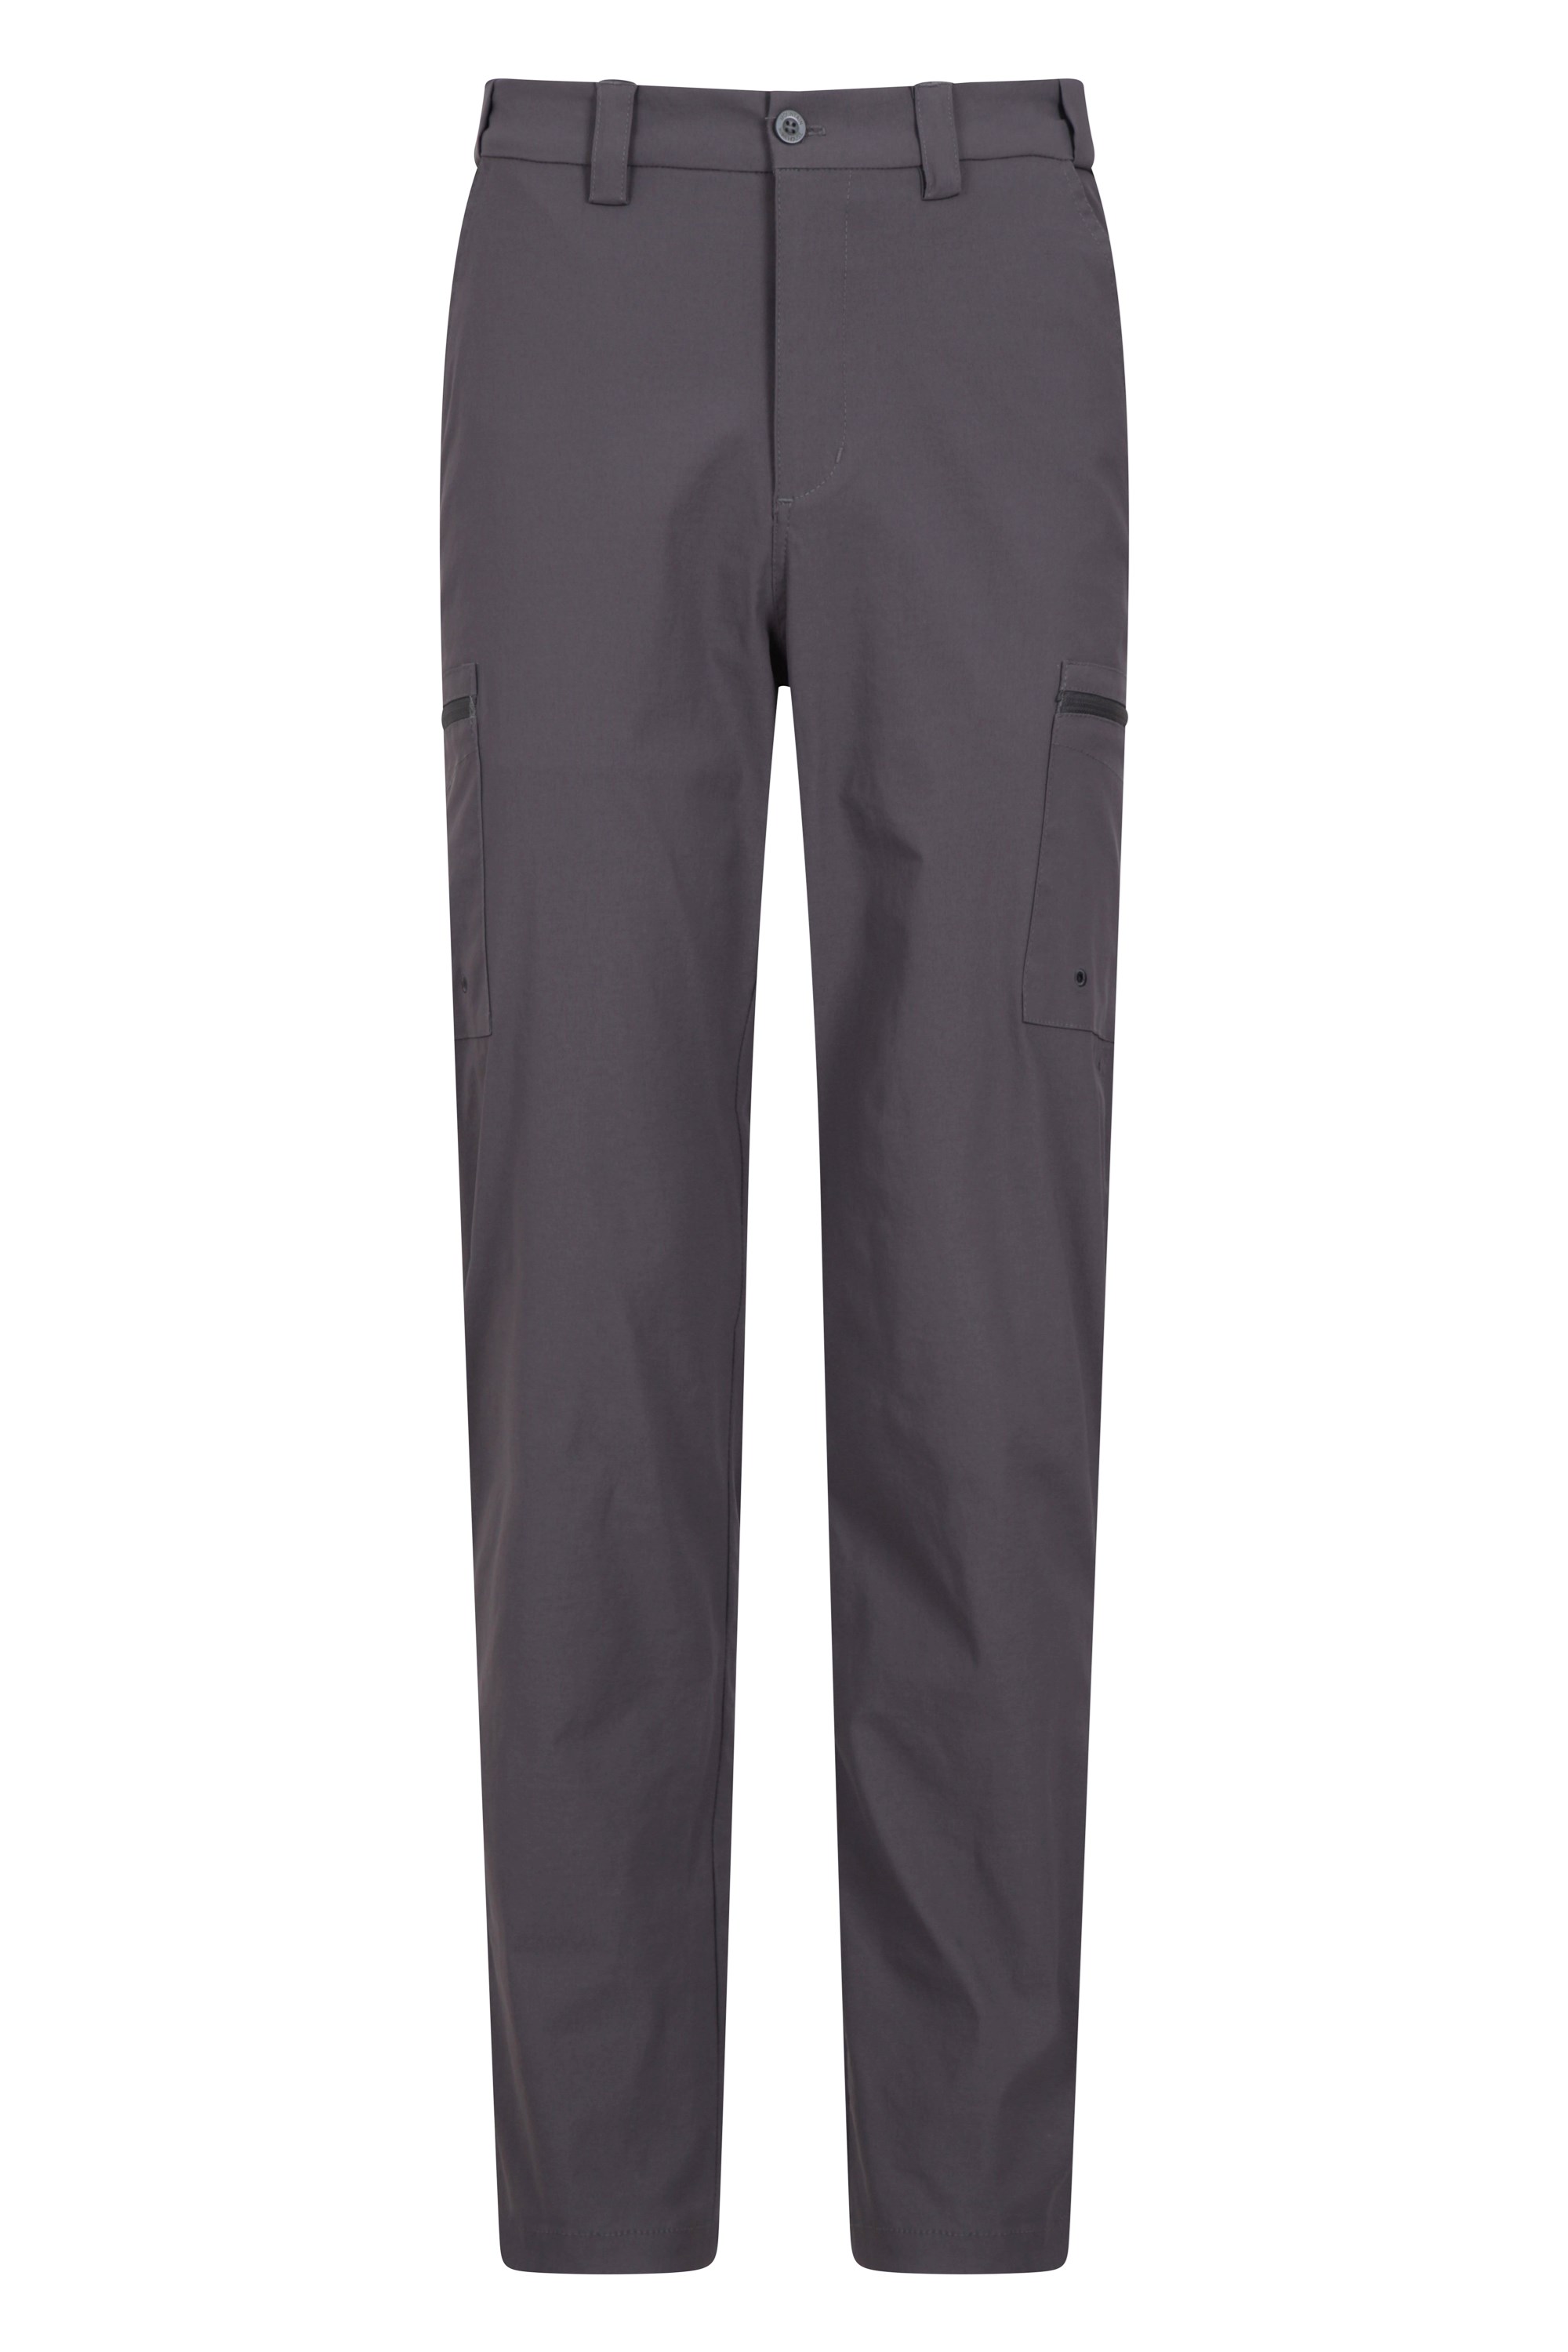 Spodnie Trek Stretch - 81cm - Grey